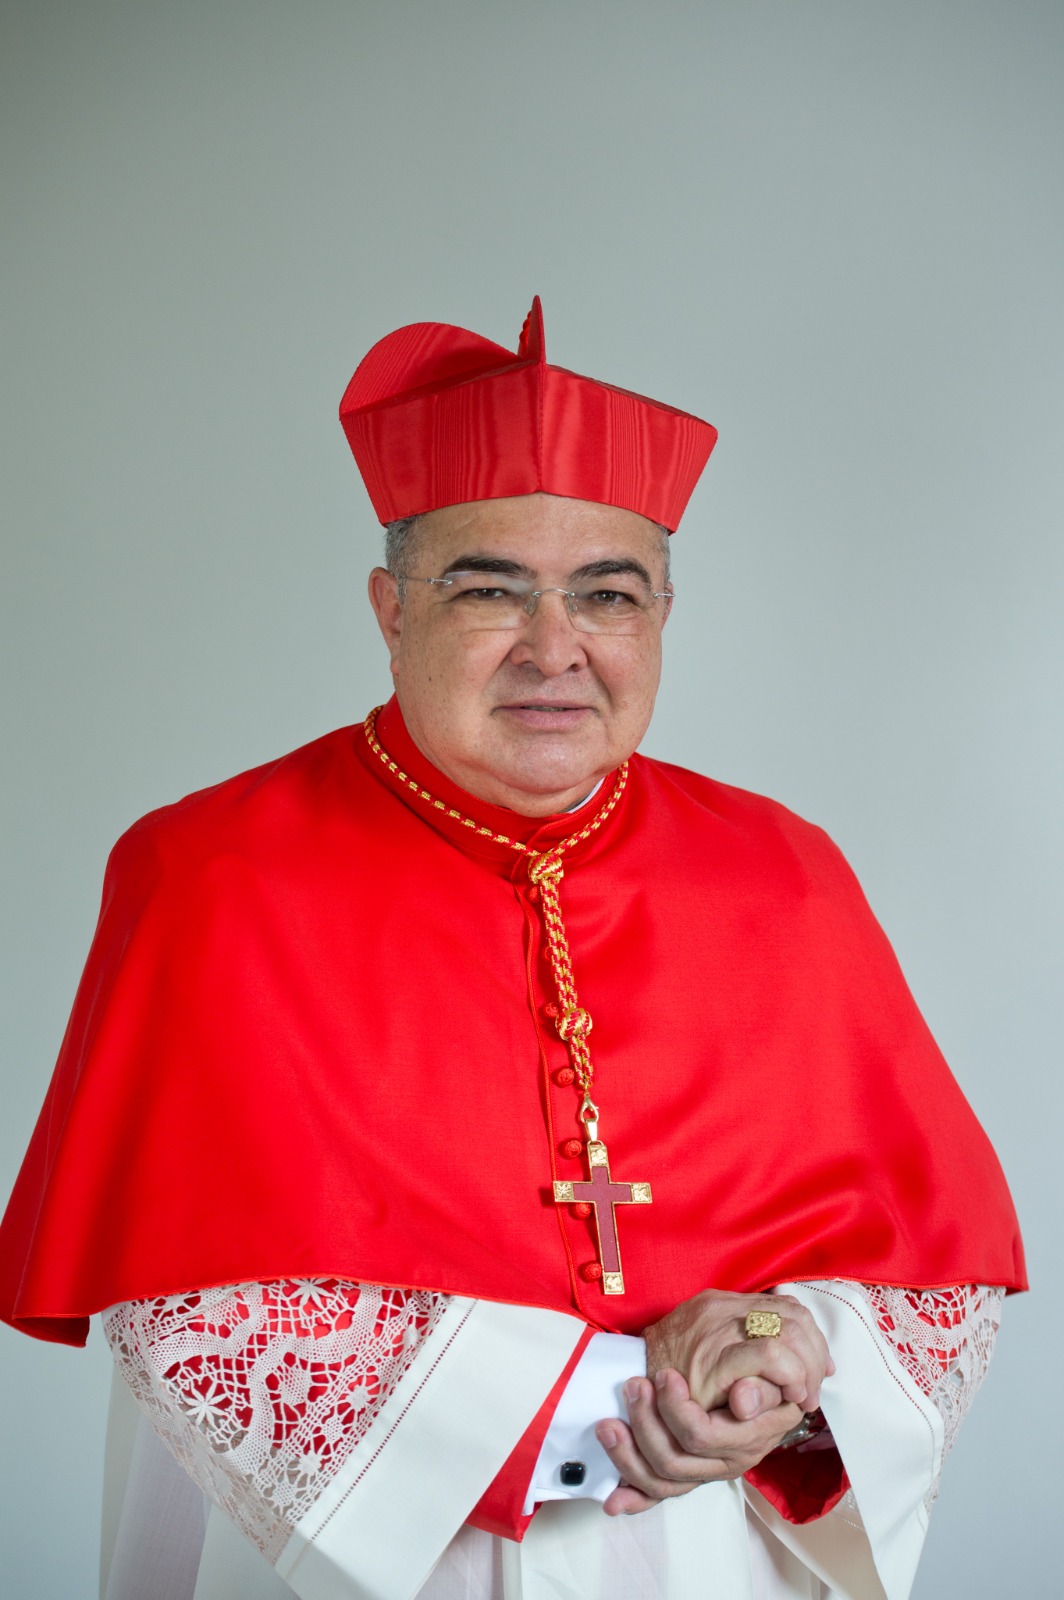 “Somos a favor da vida”: Mensagem do Cardeal Orani João Tempesta por ocasião do julgamento da ADPF 442 no STF